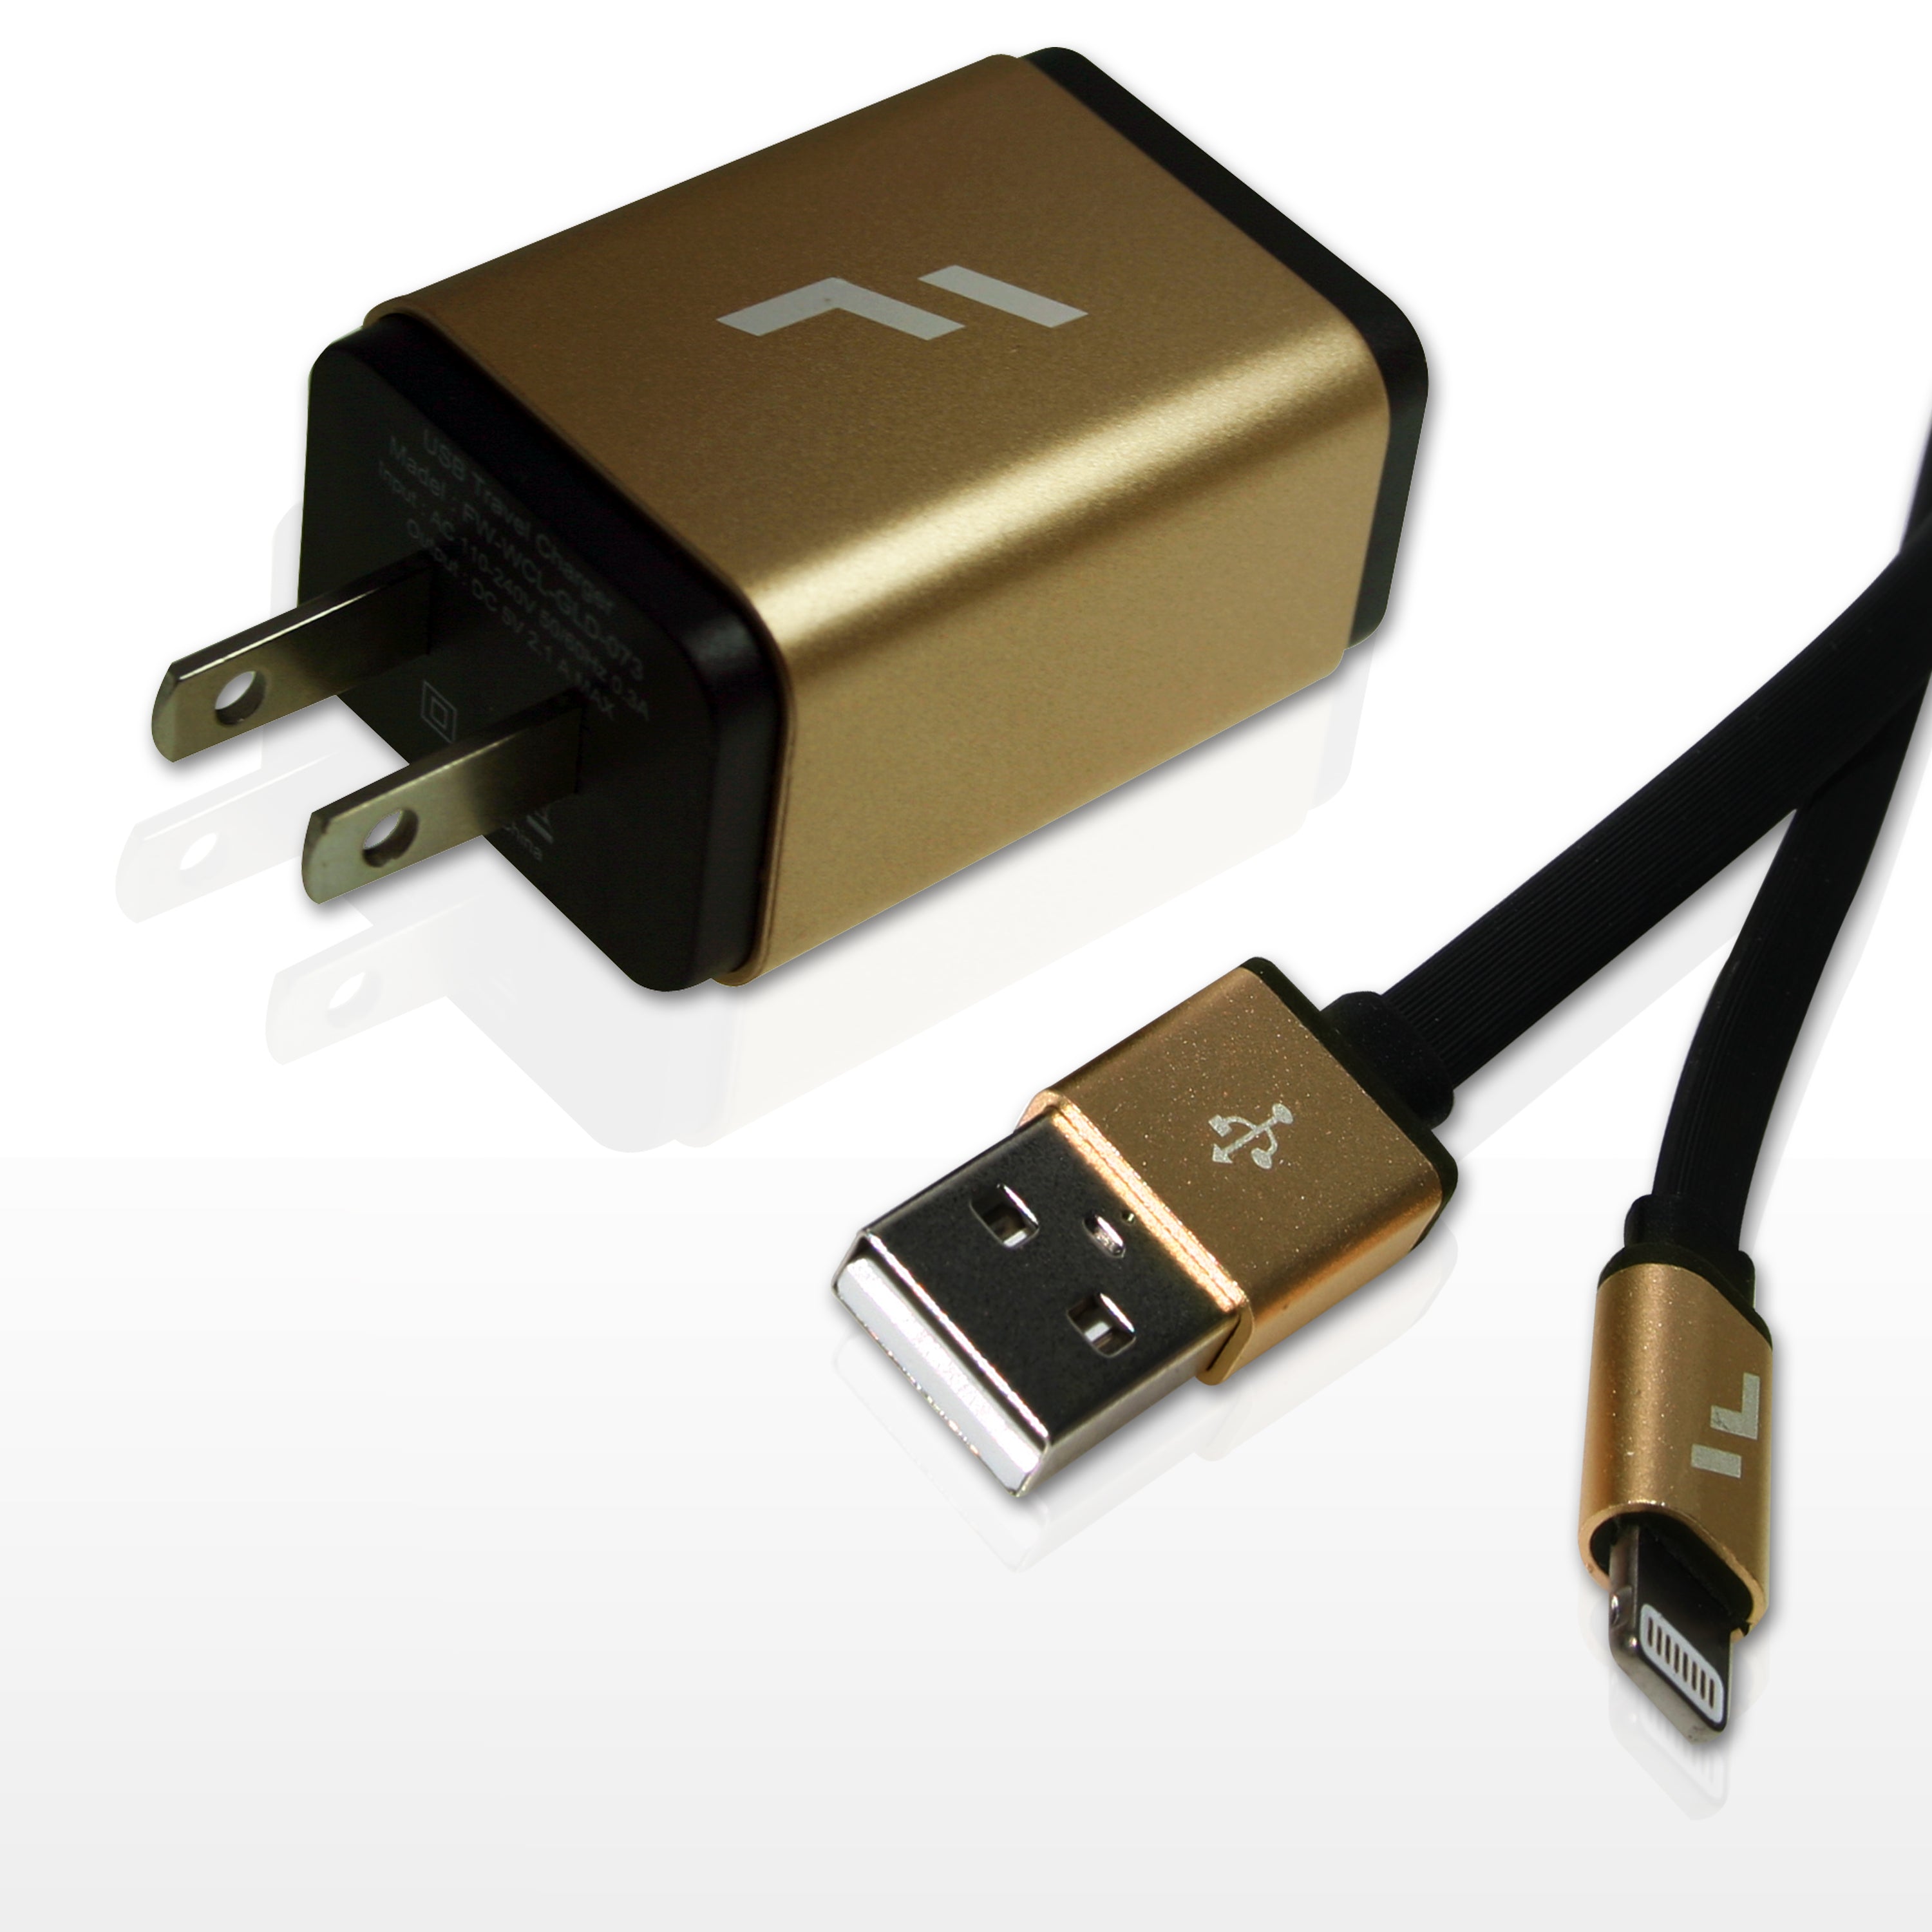 Comprar Cargador USB de 6 puertos grabado con su logo